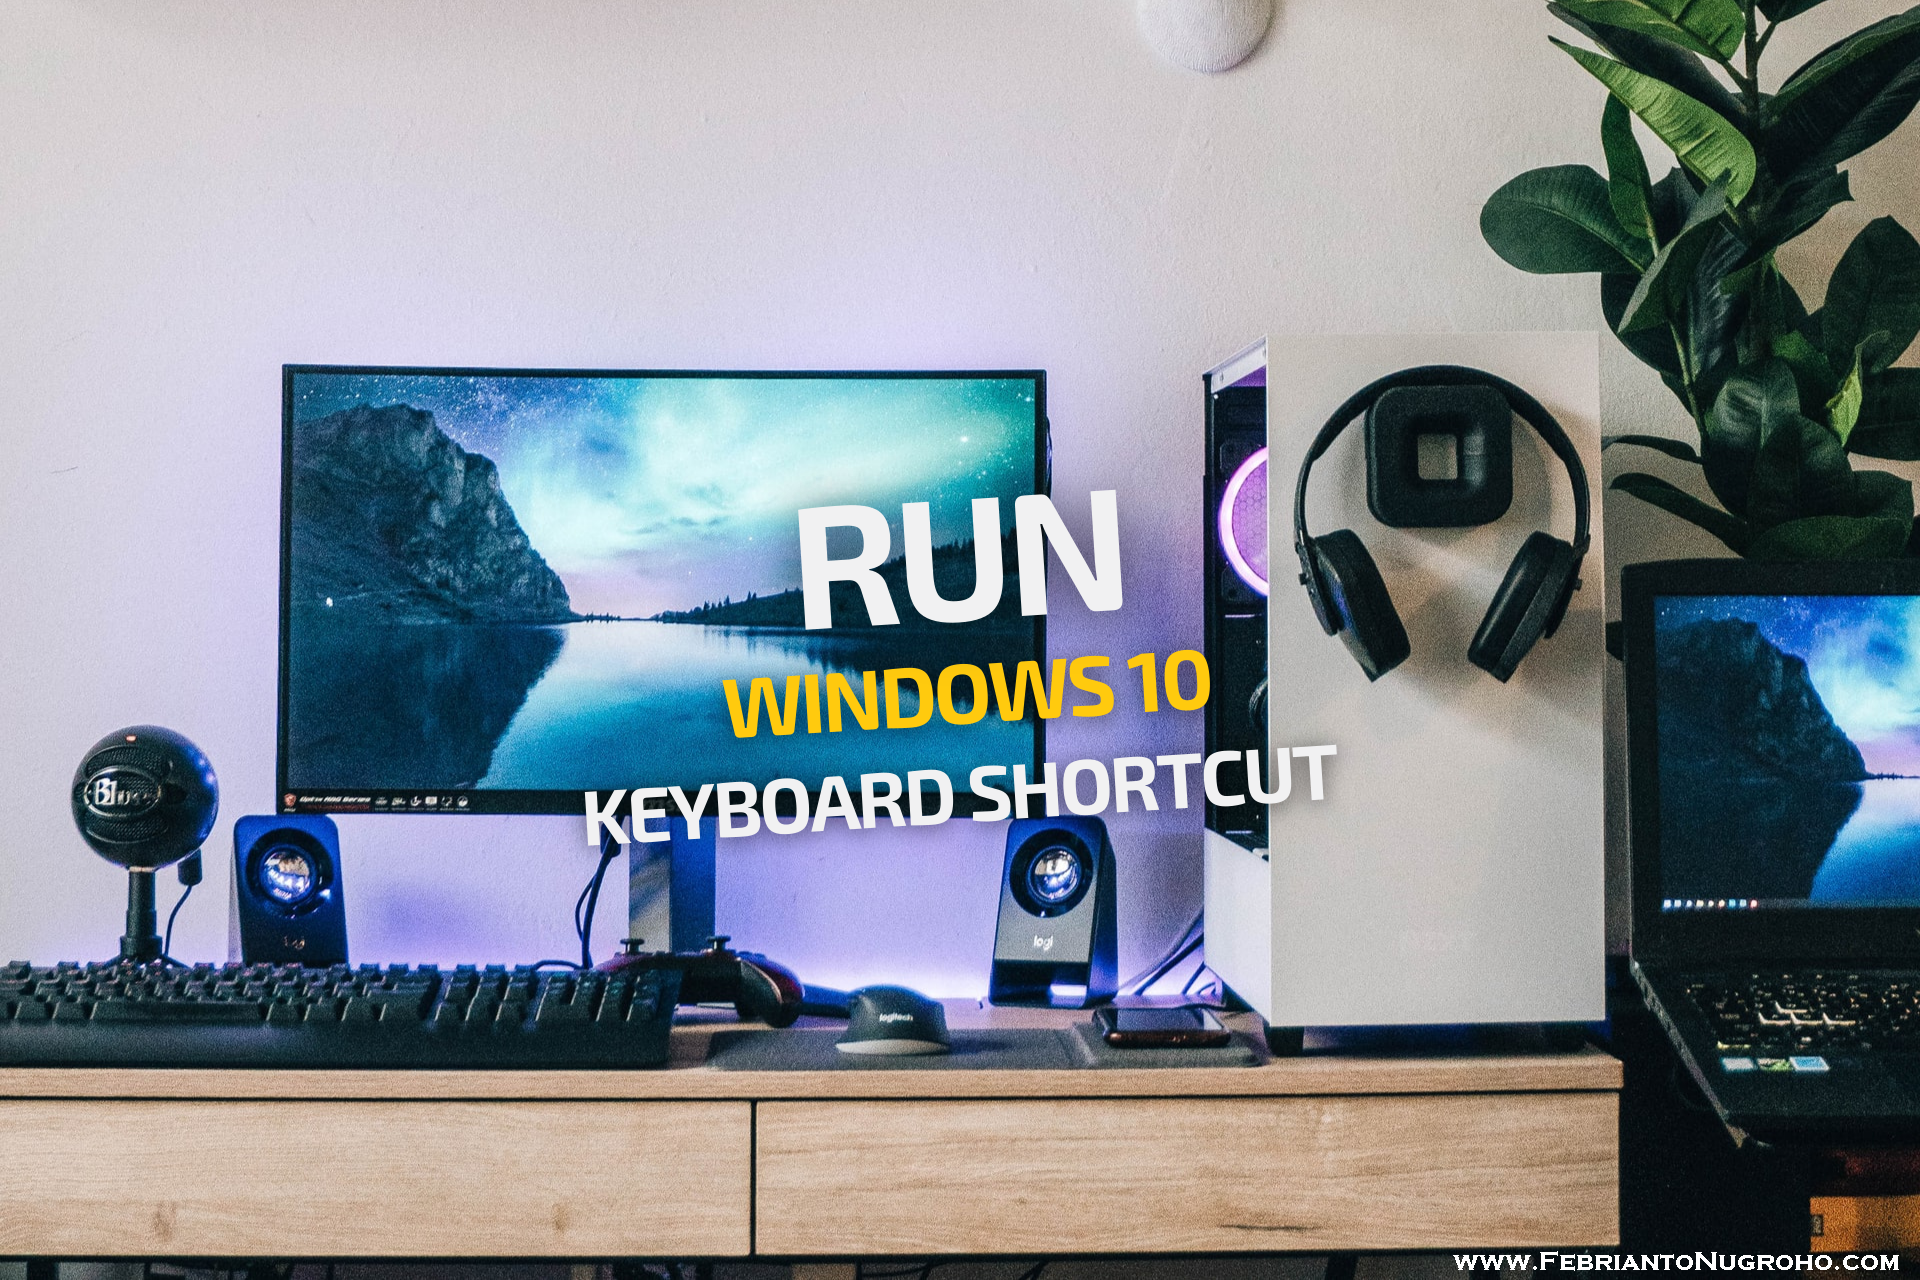 Membuka Utilitas Run di Windows 10 via Keyboard Shortcut